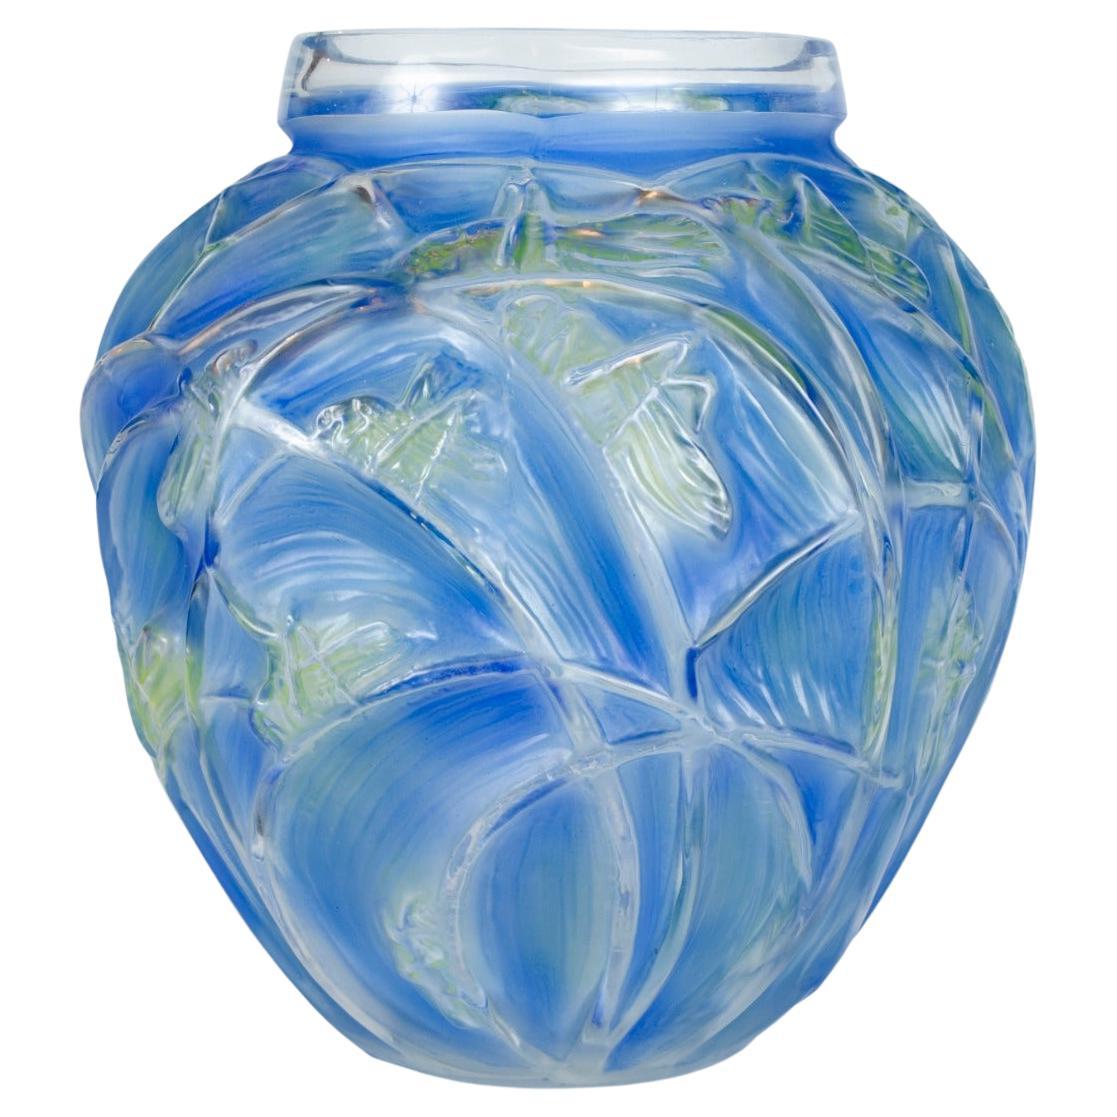 Vase "Sauterelles" by René Lalique